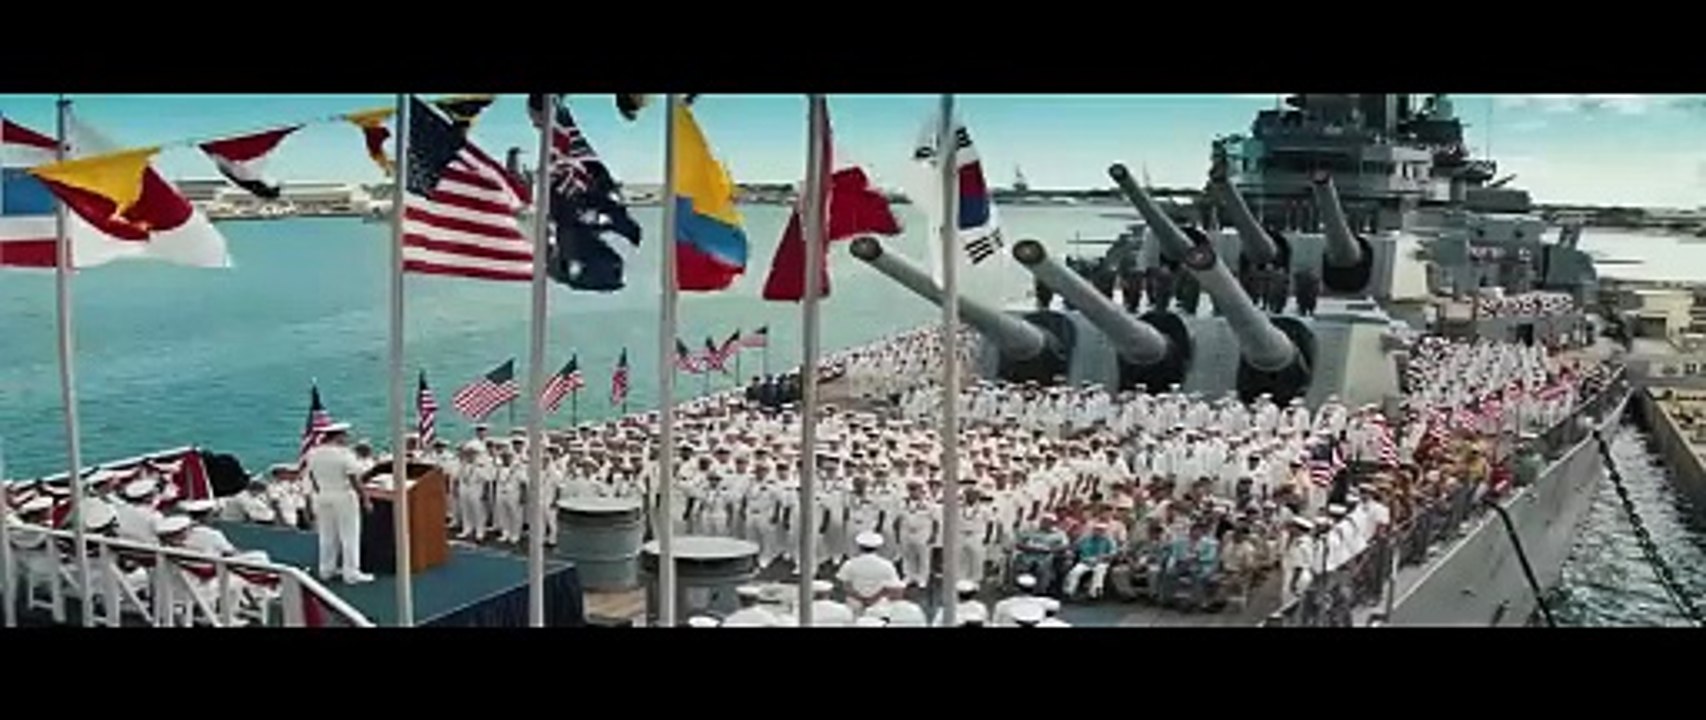 Battleship - Trailer zur Verfilmung von Schiffe versenken